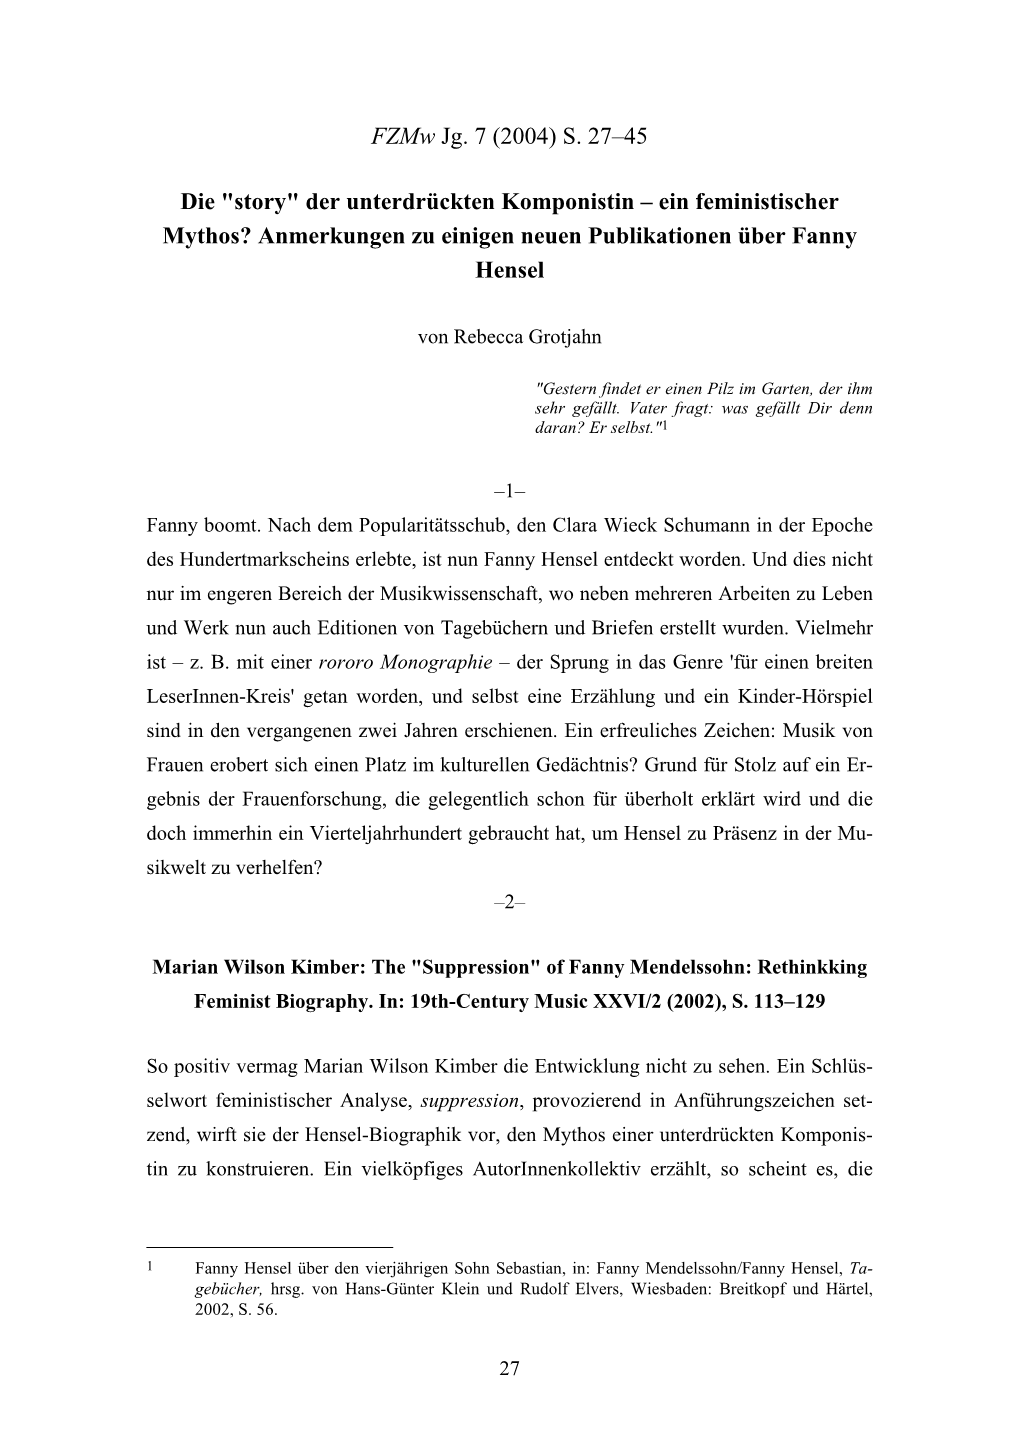 Fzmw, 2004 3, RA Zu Publikationen Über Fanny Hensel